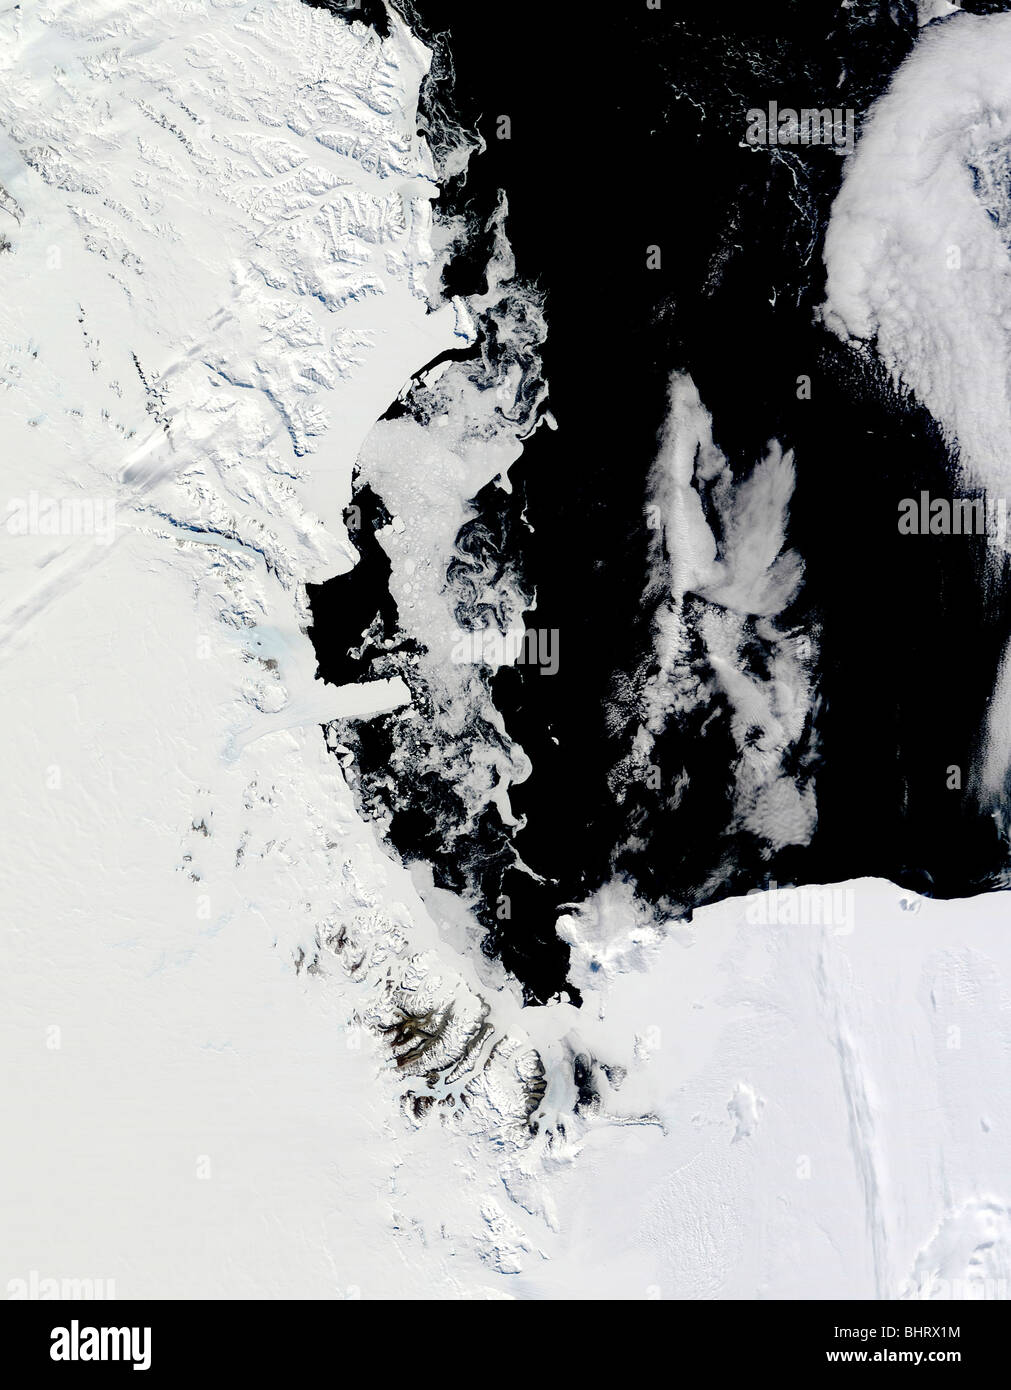 January 18, 2010 - Ross Sea, Antarctica. Stock Photo